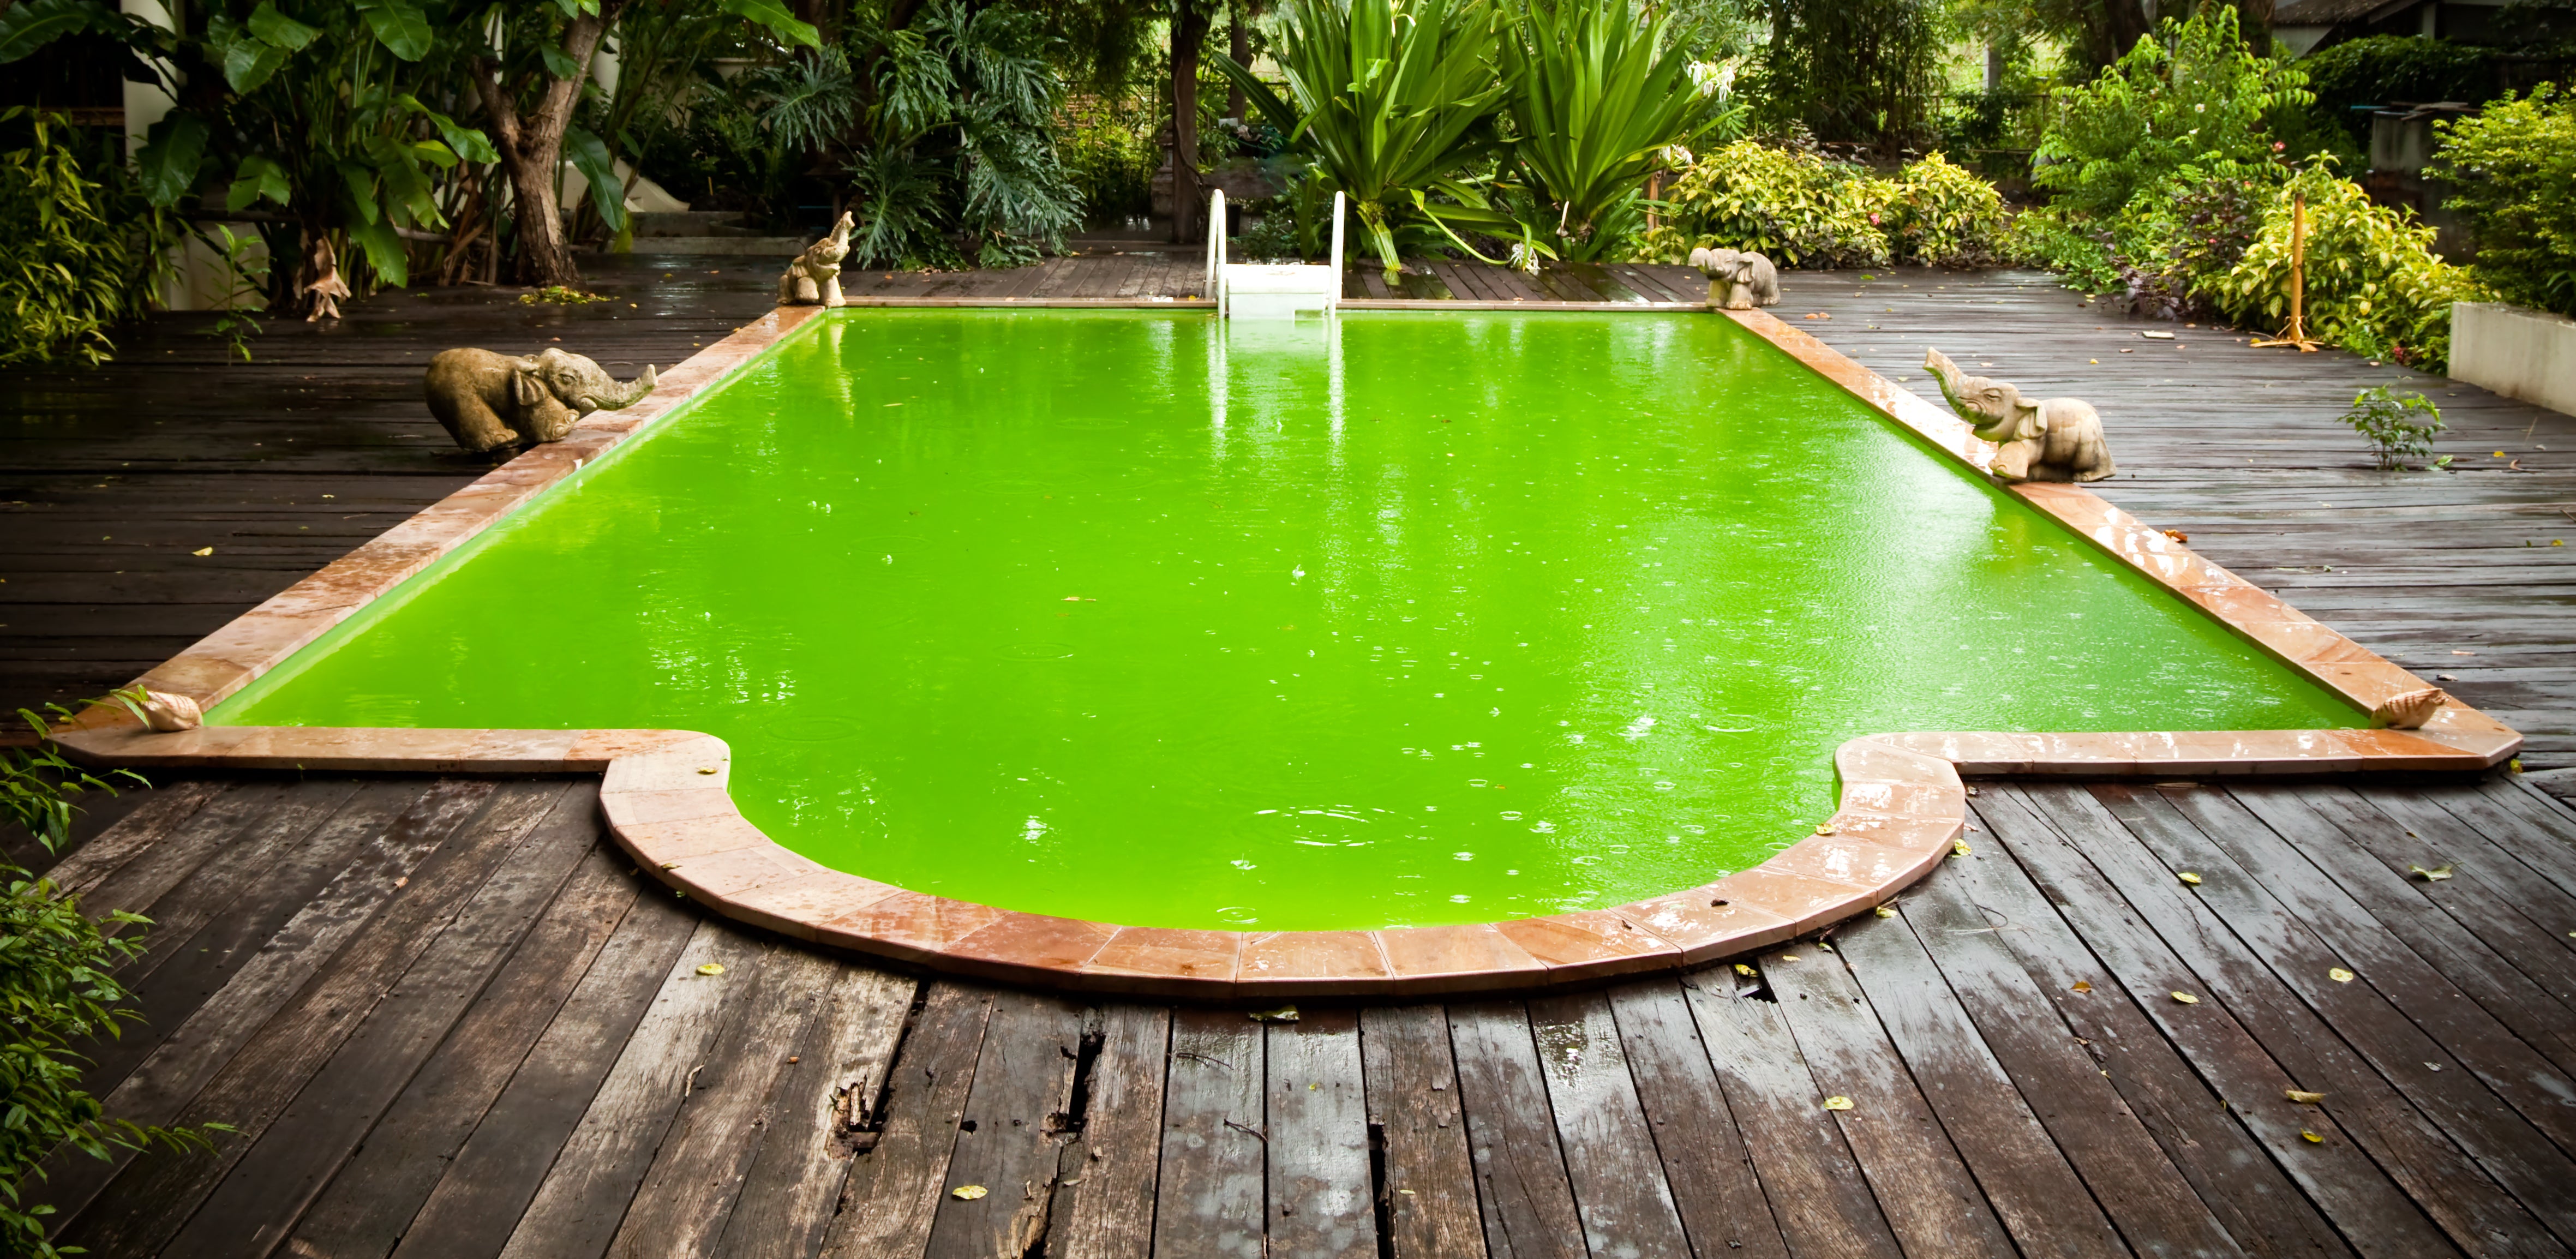 Ma piscine est verte ! Que faire?